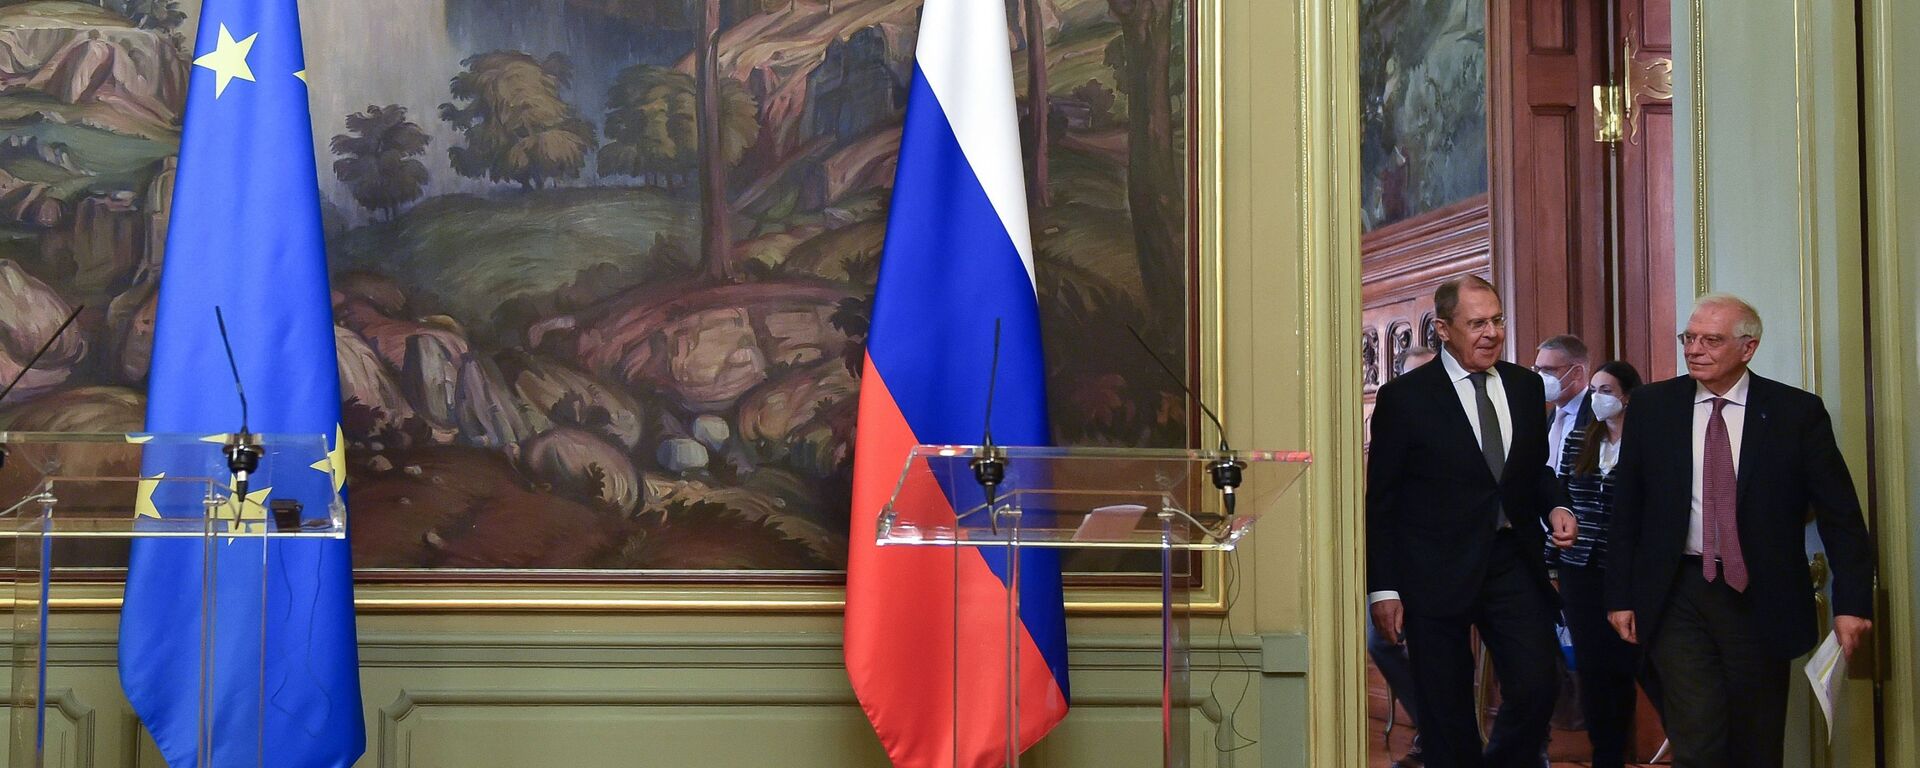 El jefe de la diplomacia europea, Josep Borrell, junto al canciller de Rusia, Serguéi Lavrov - Sputnik Mundo, 1920, 07.02.2021